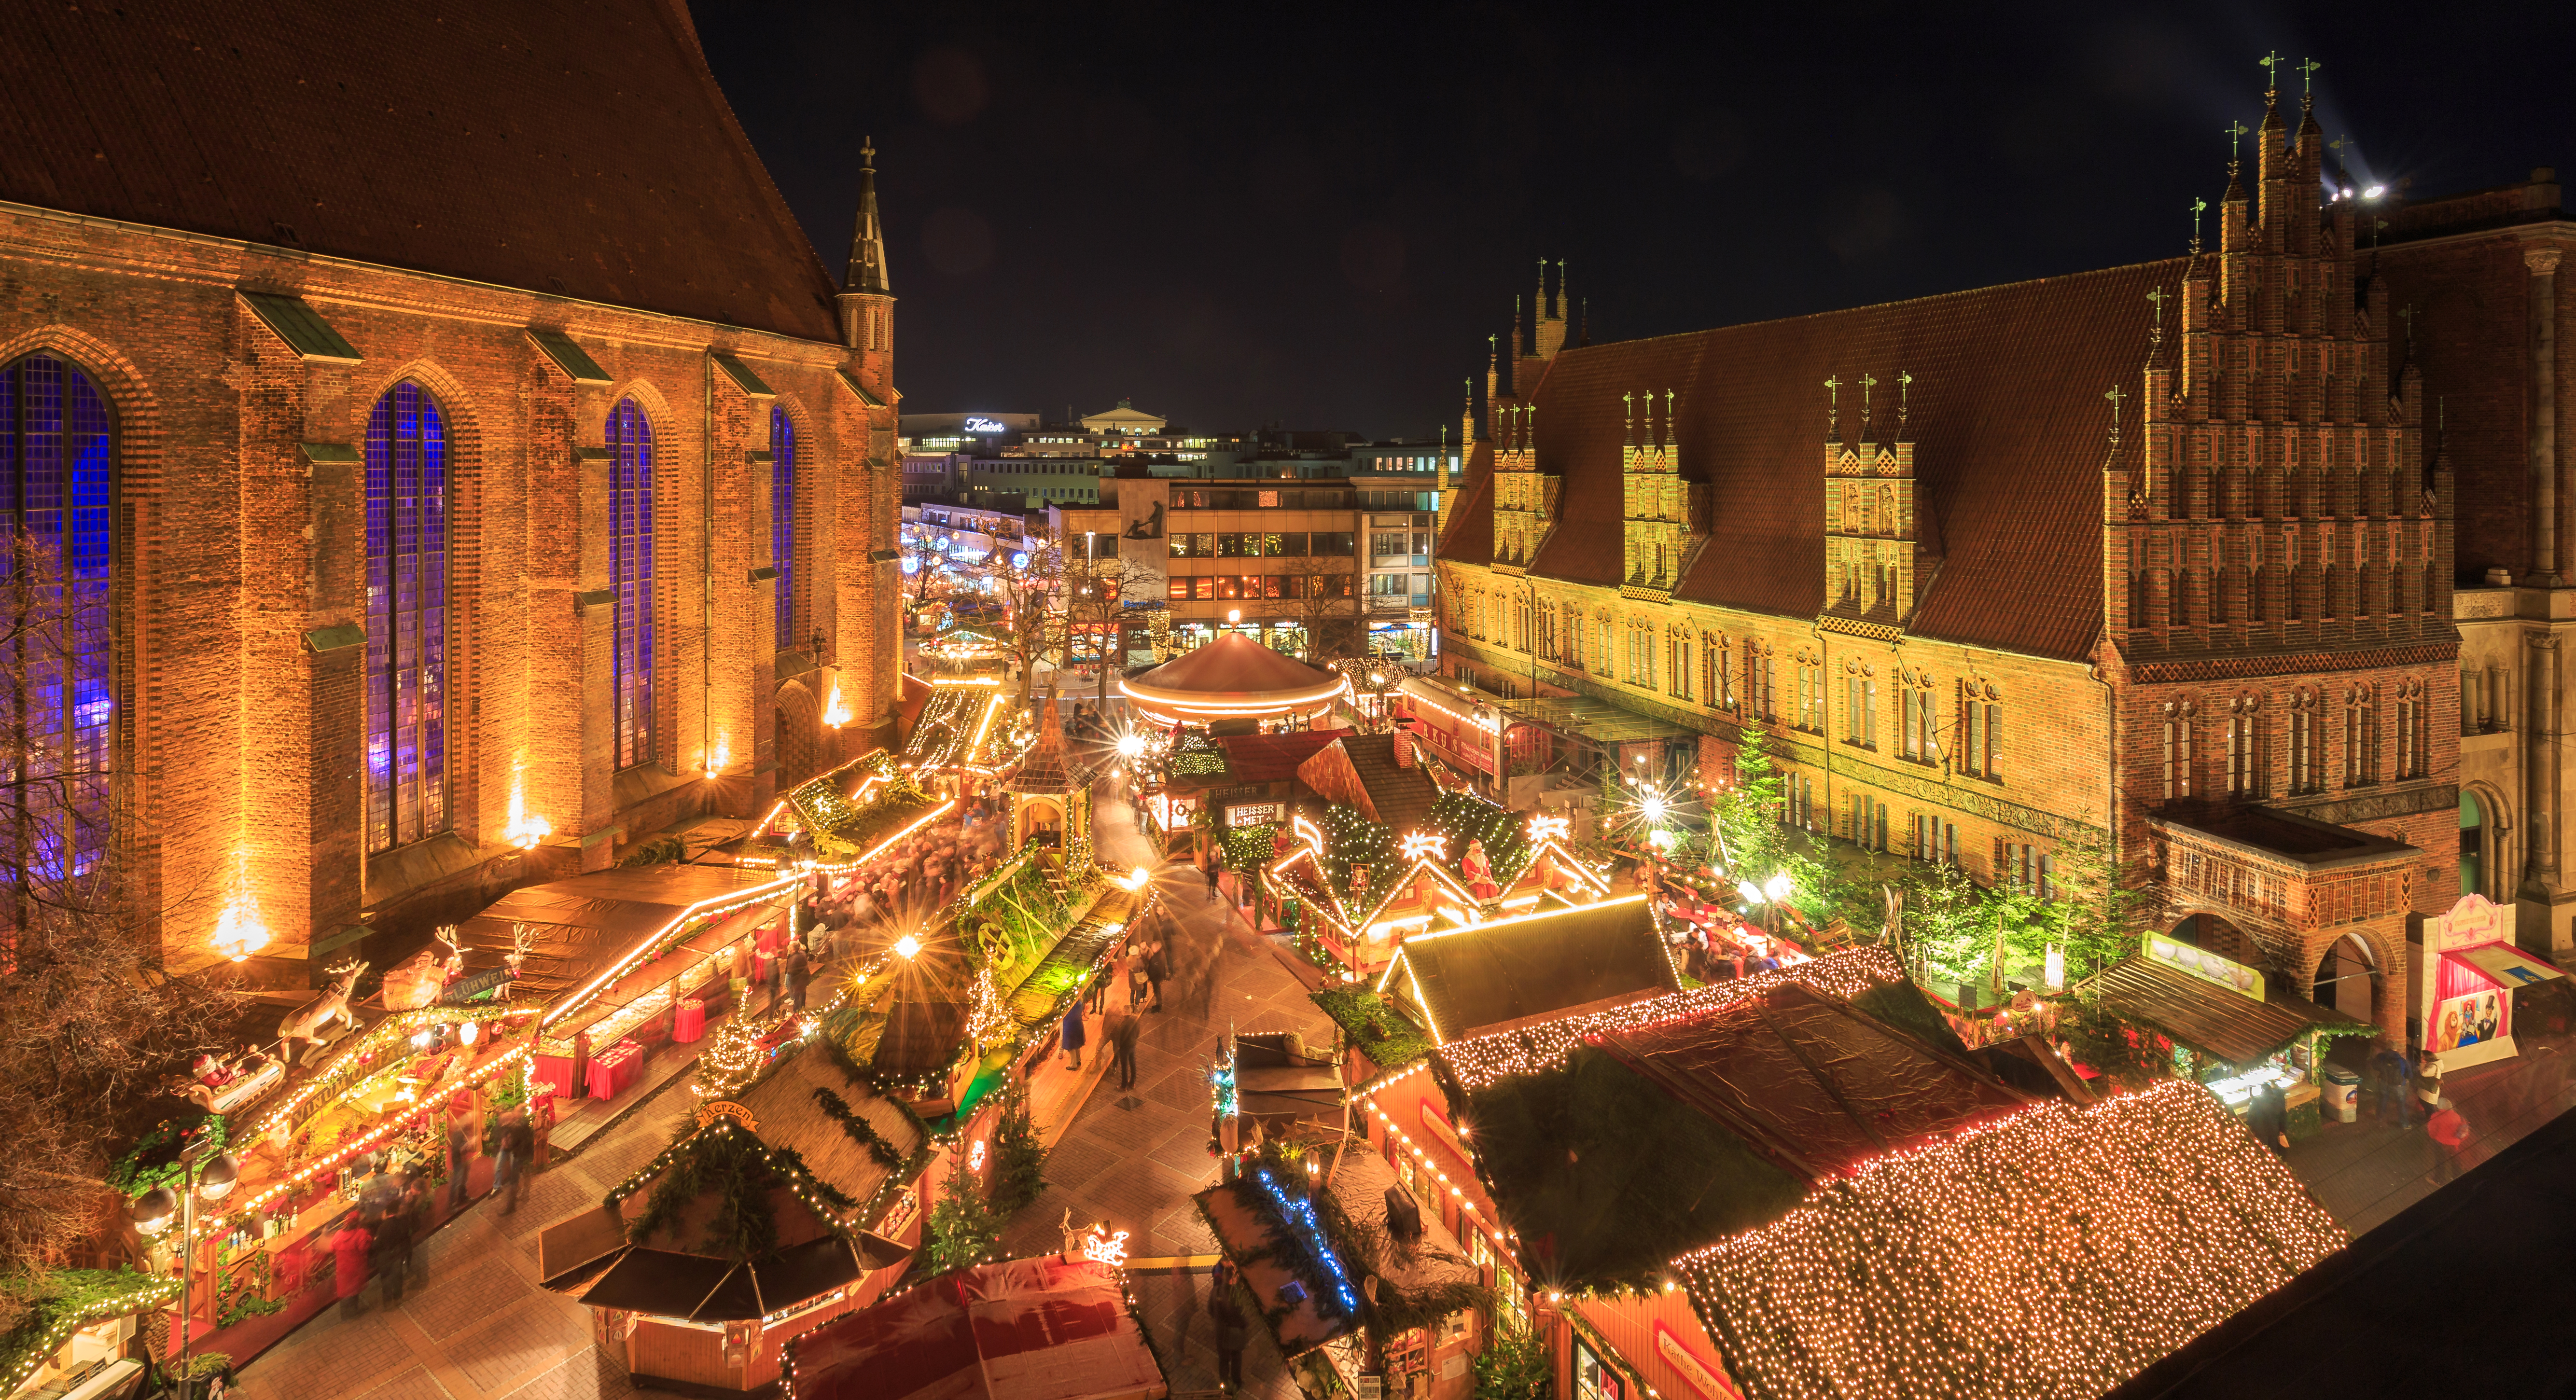 So feiert Hannover Weihnachten und Silvester Image 1